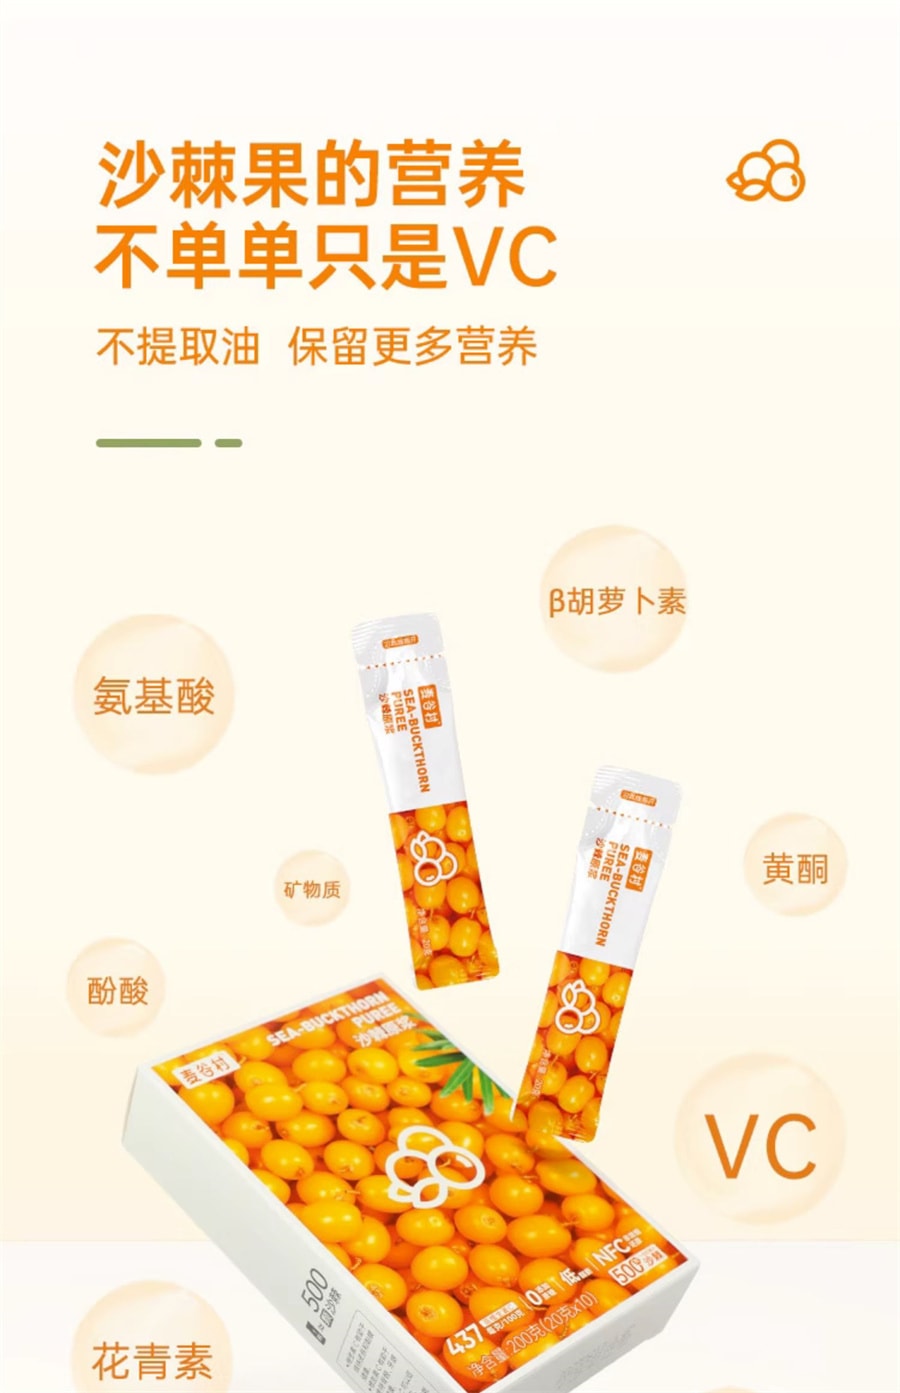 【中国直邮】麦谷村 沙棘原浆NFC鲜榨沙棘汁液小果维生素c200g/盒